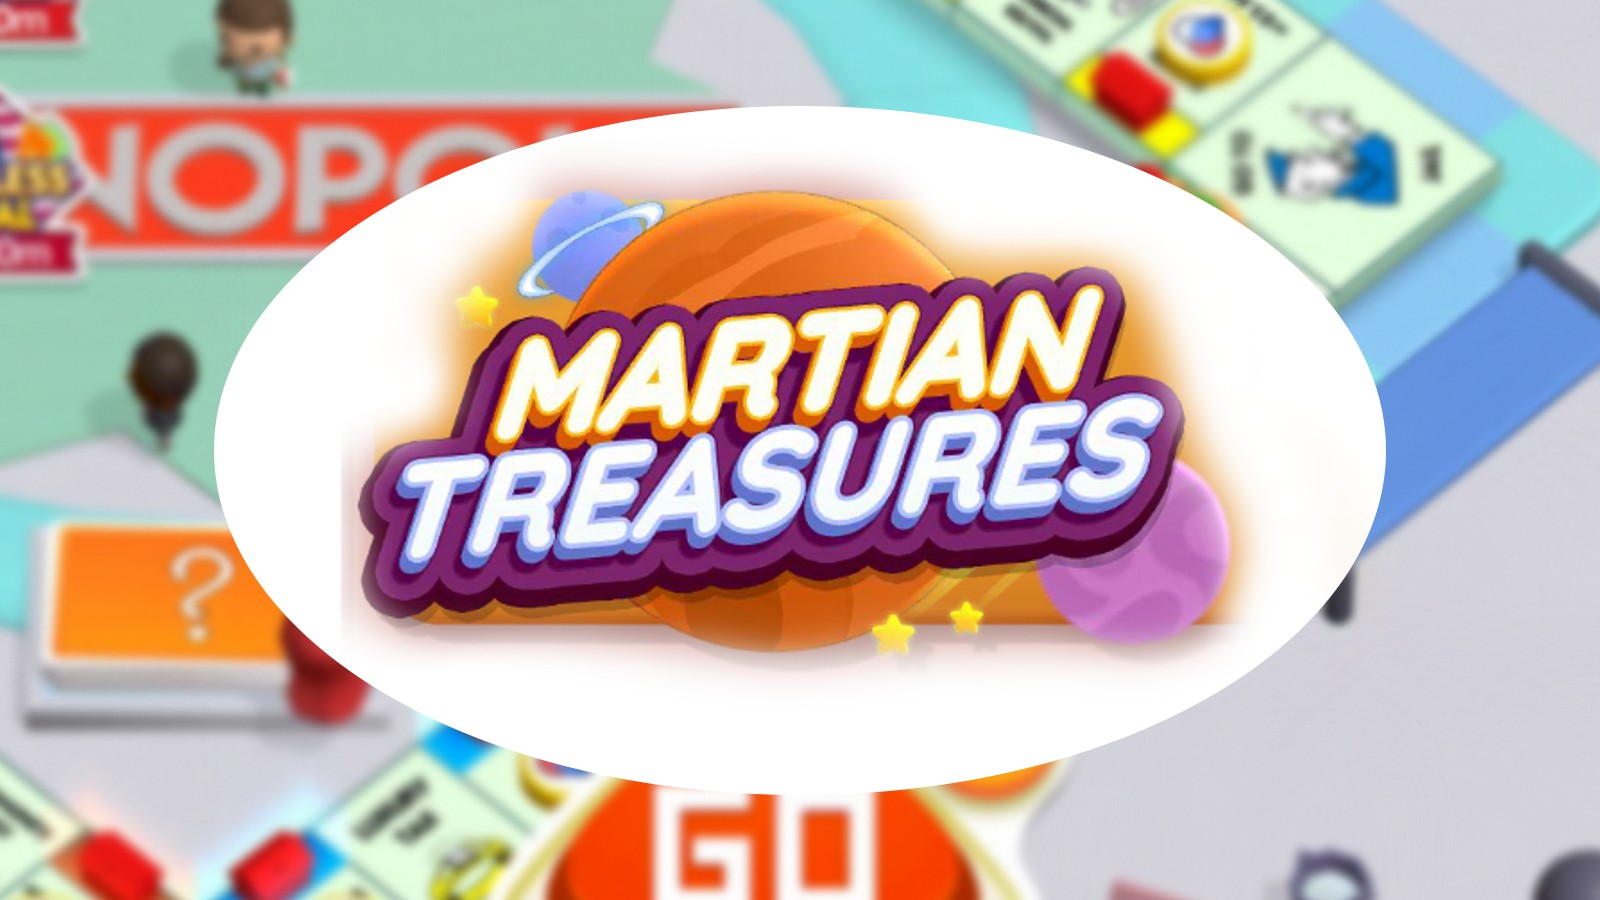 Событие Monopoly GO Martian Treasures: даты и награды